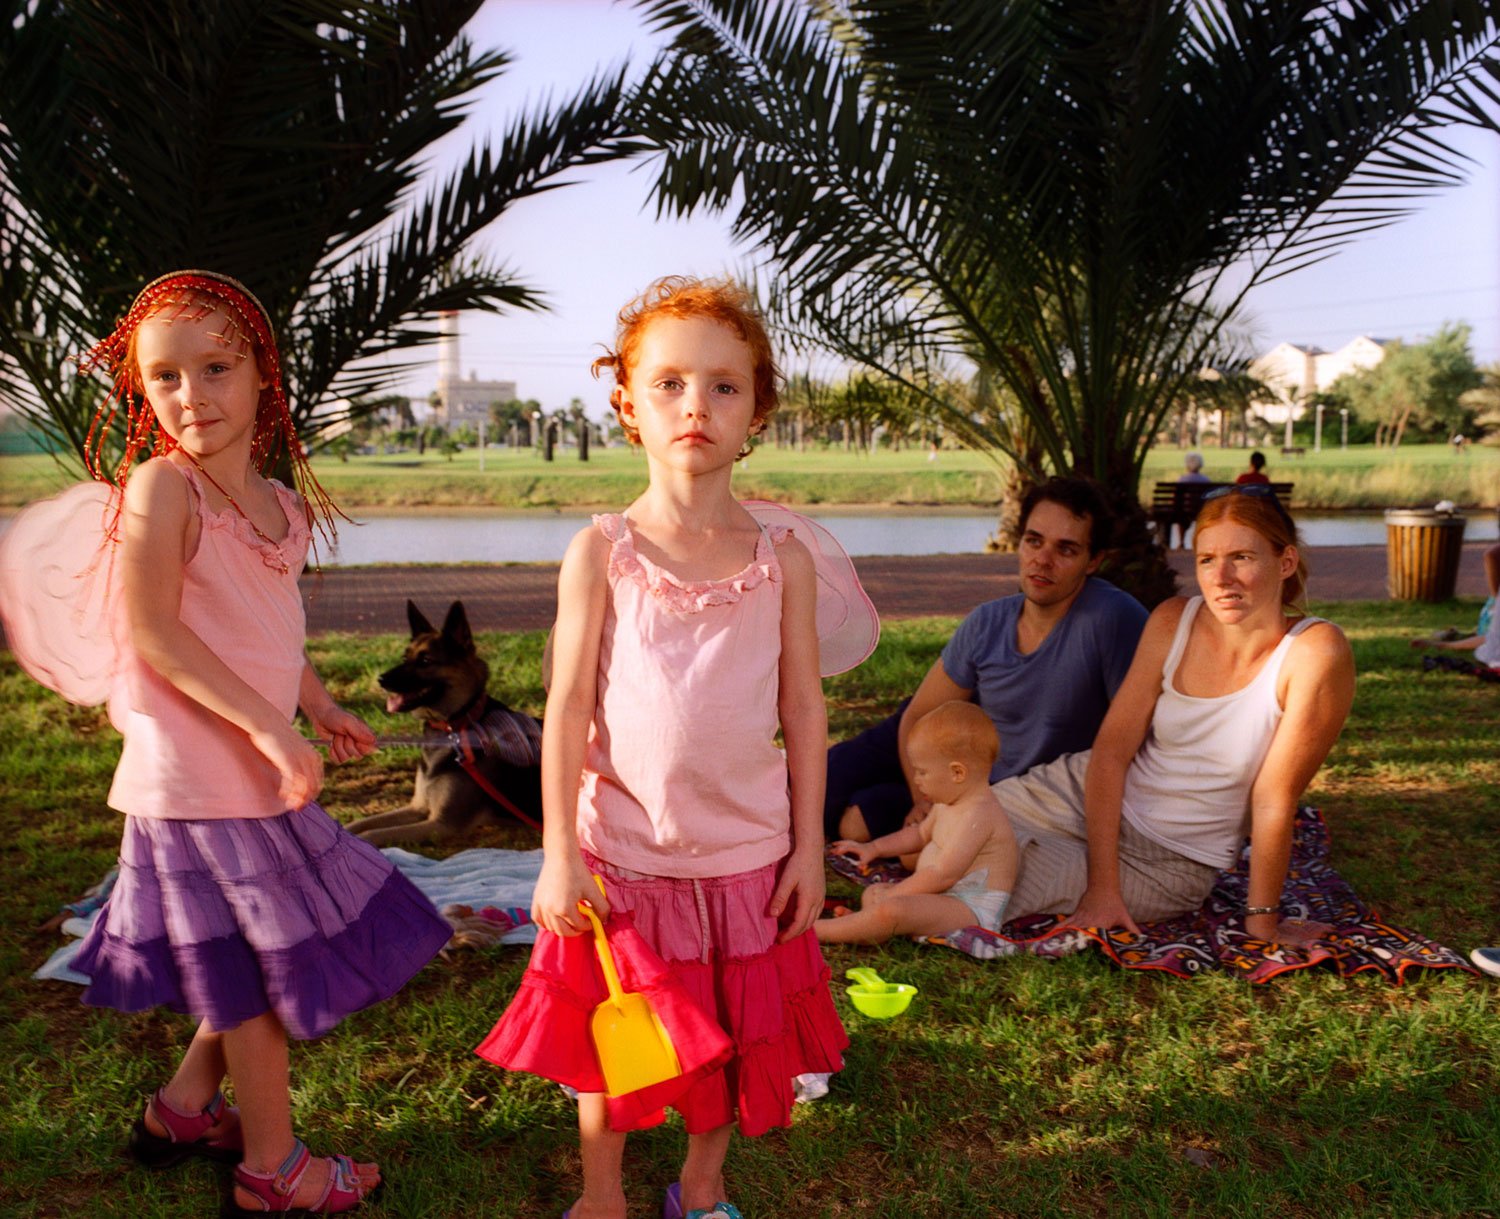 Dimet family in the park, Tel Aviv, September 2005